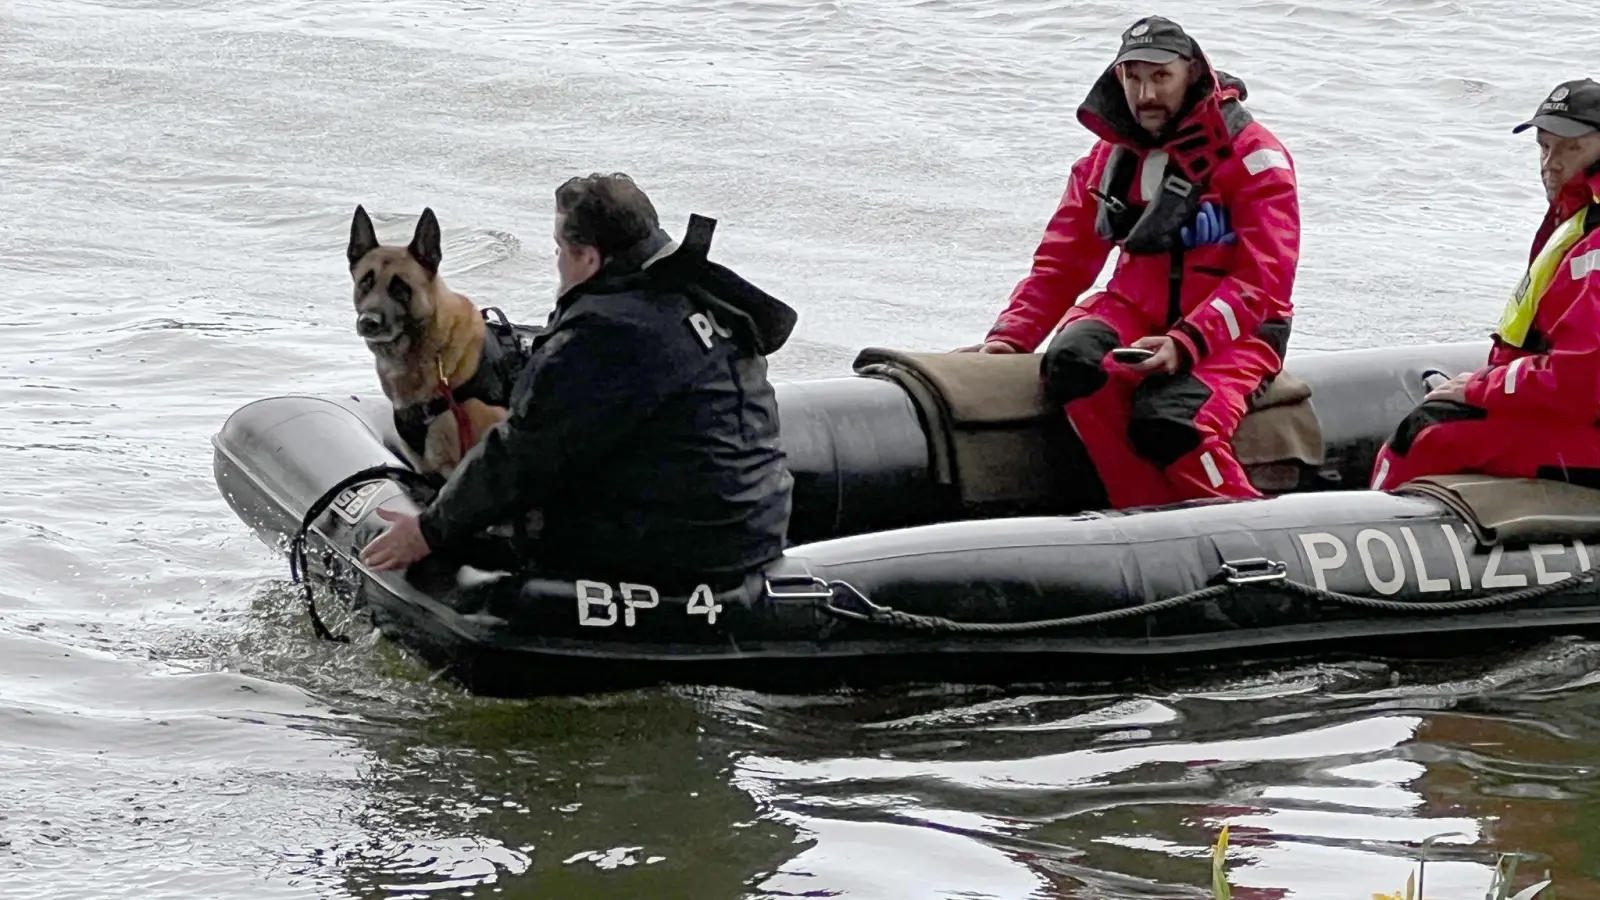 Einsatzkräfte sind mit einem Boot der Polizei im Uferbereich der Donau unterwegs. (Foto: Friedrich/vifogra/dpa/Archivbild)